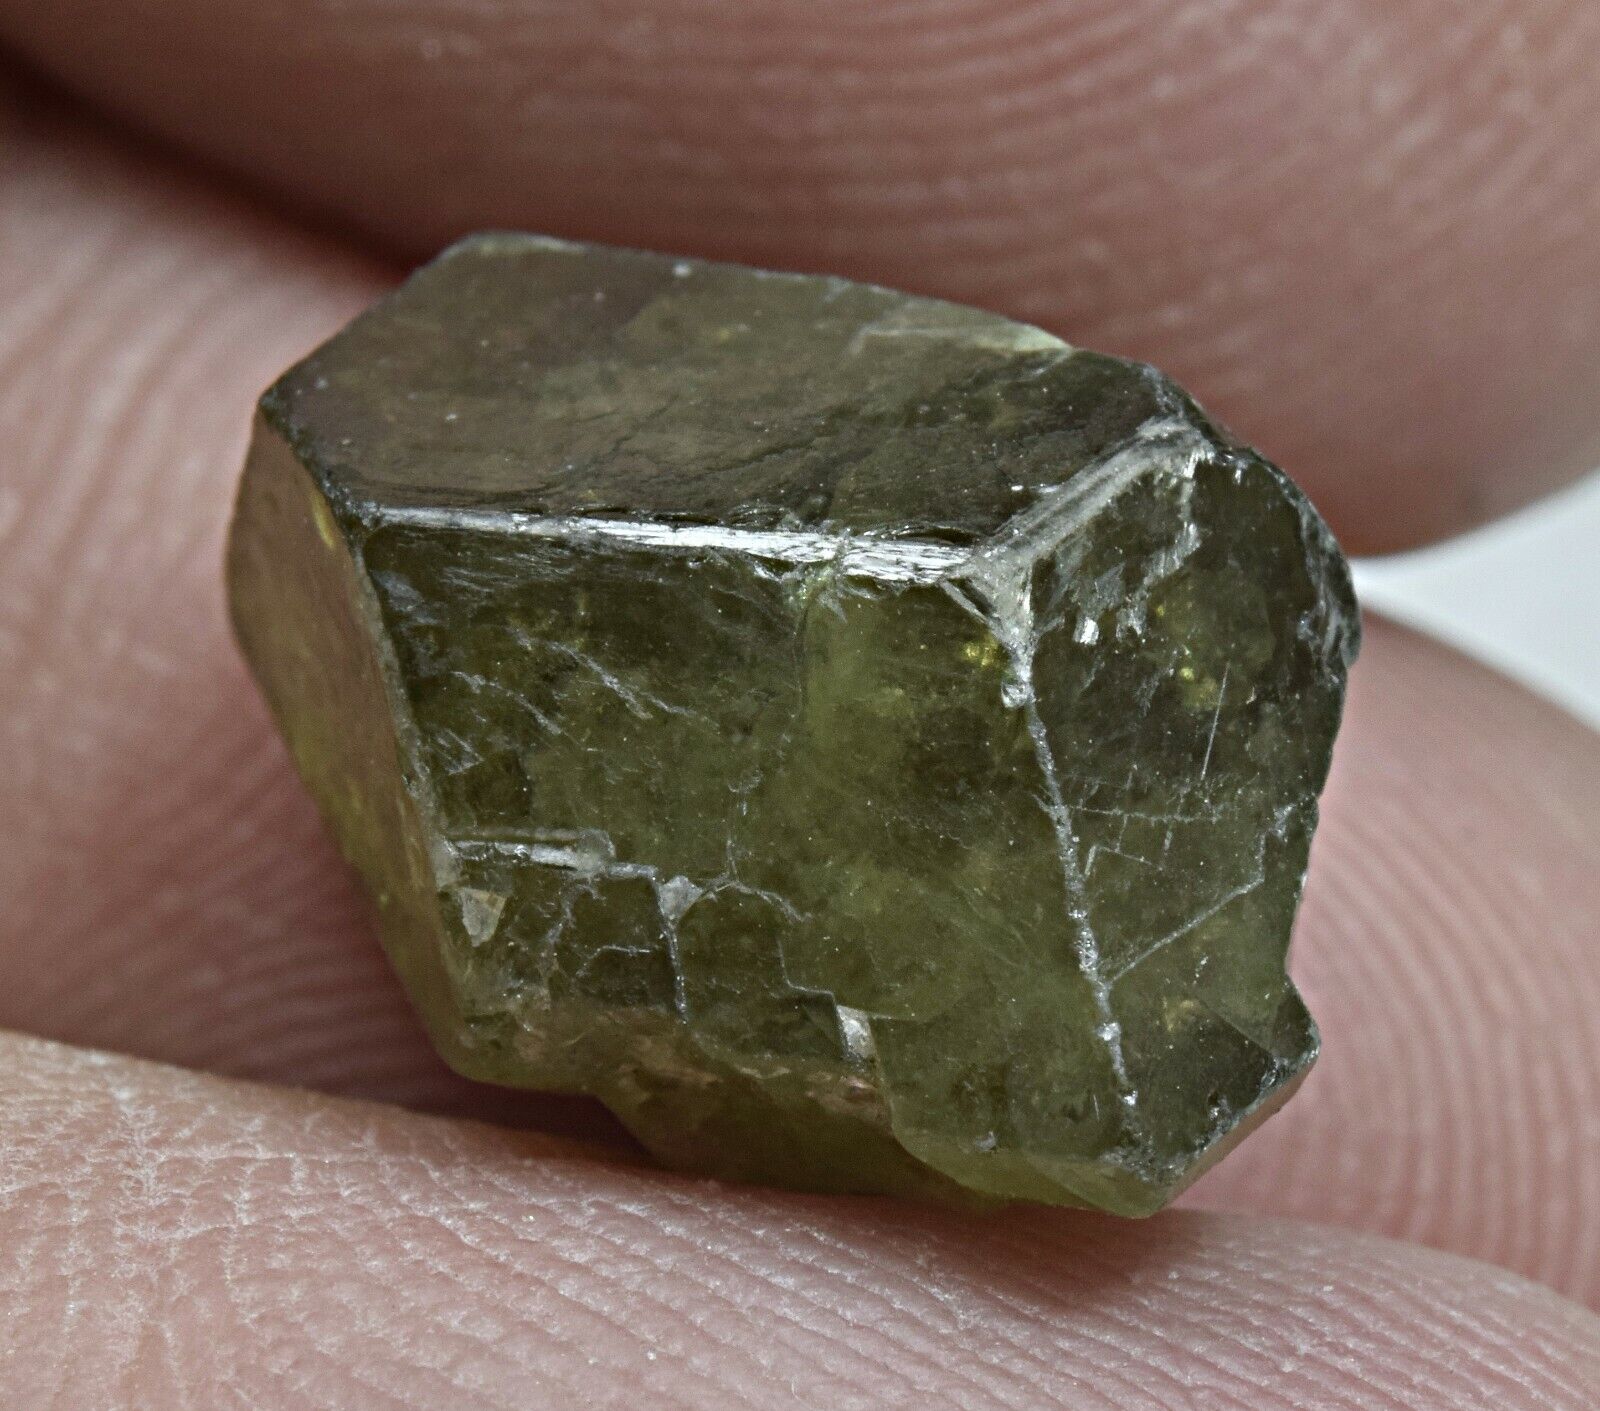 13 Carat Demantoid Garnet Crystal From Afghanistan 